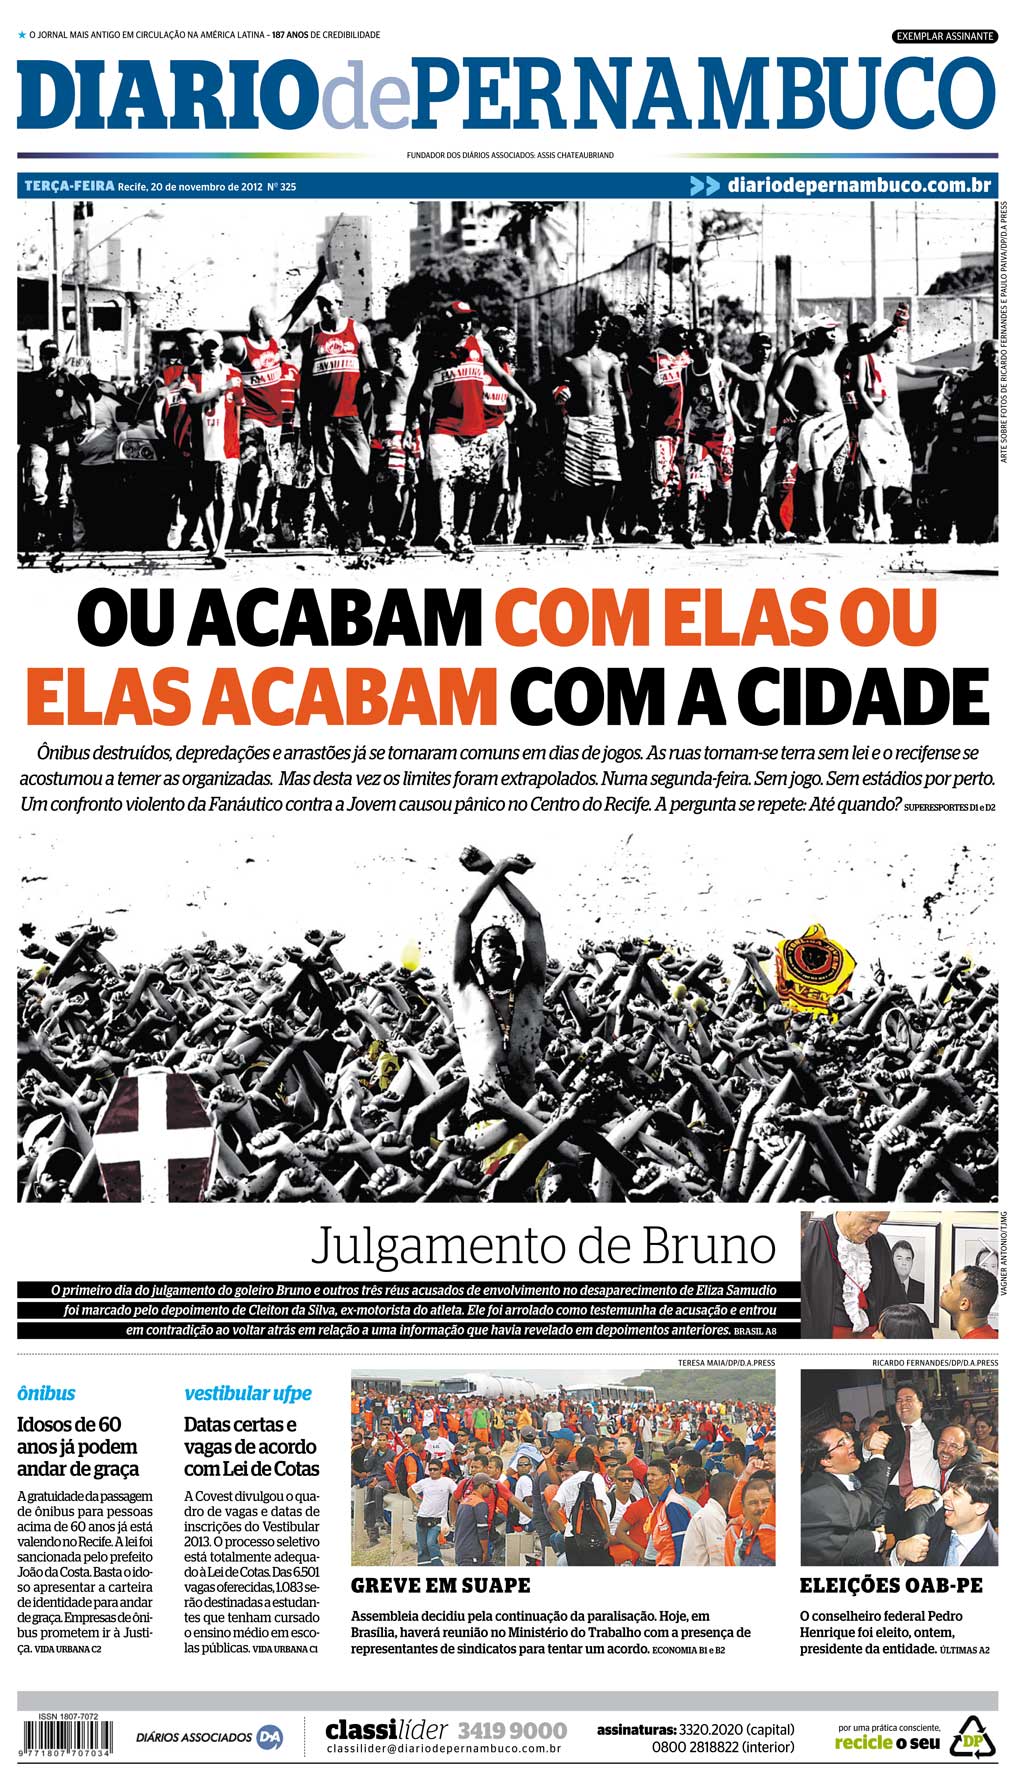 Balanço das capas do Diario de Pernambuco em novembro